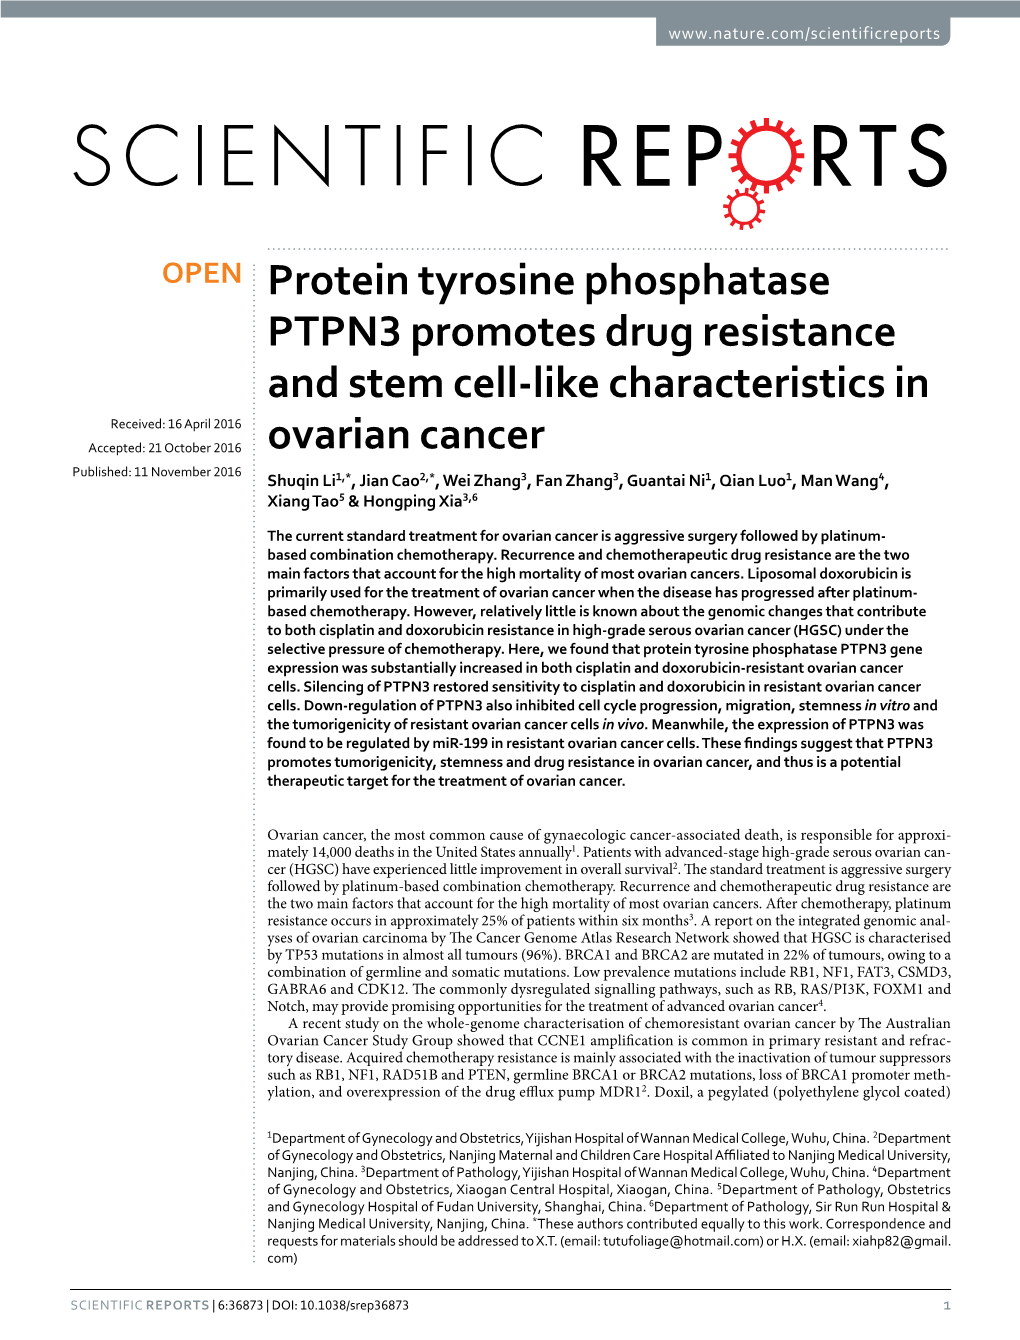 Protein Tyrosine Phosphatase PTPN3 Promotes Drug Resistance and Stem